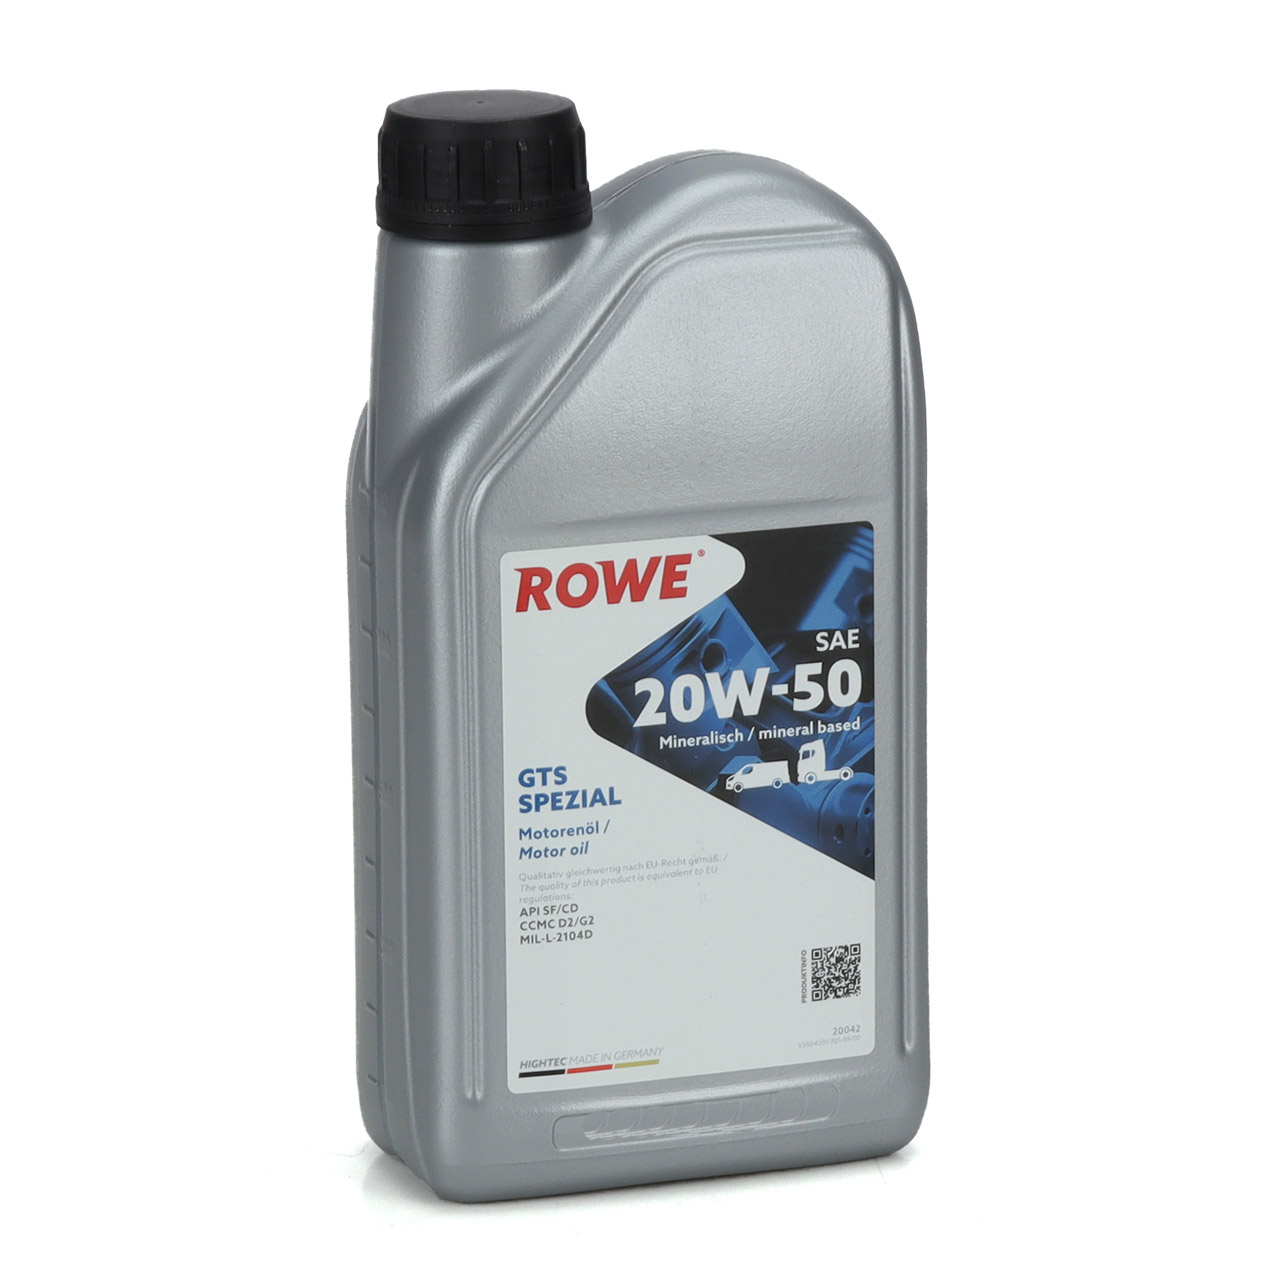 1L 1 Liter ROWE GTS SPEZIAL 20W-50 20W50 Motoröl Öl API SF/CD CCMC D/G2 MIL-L-2104D